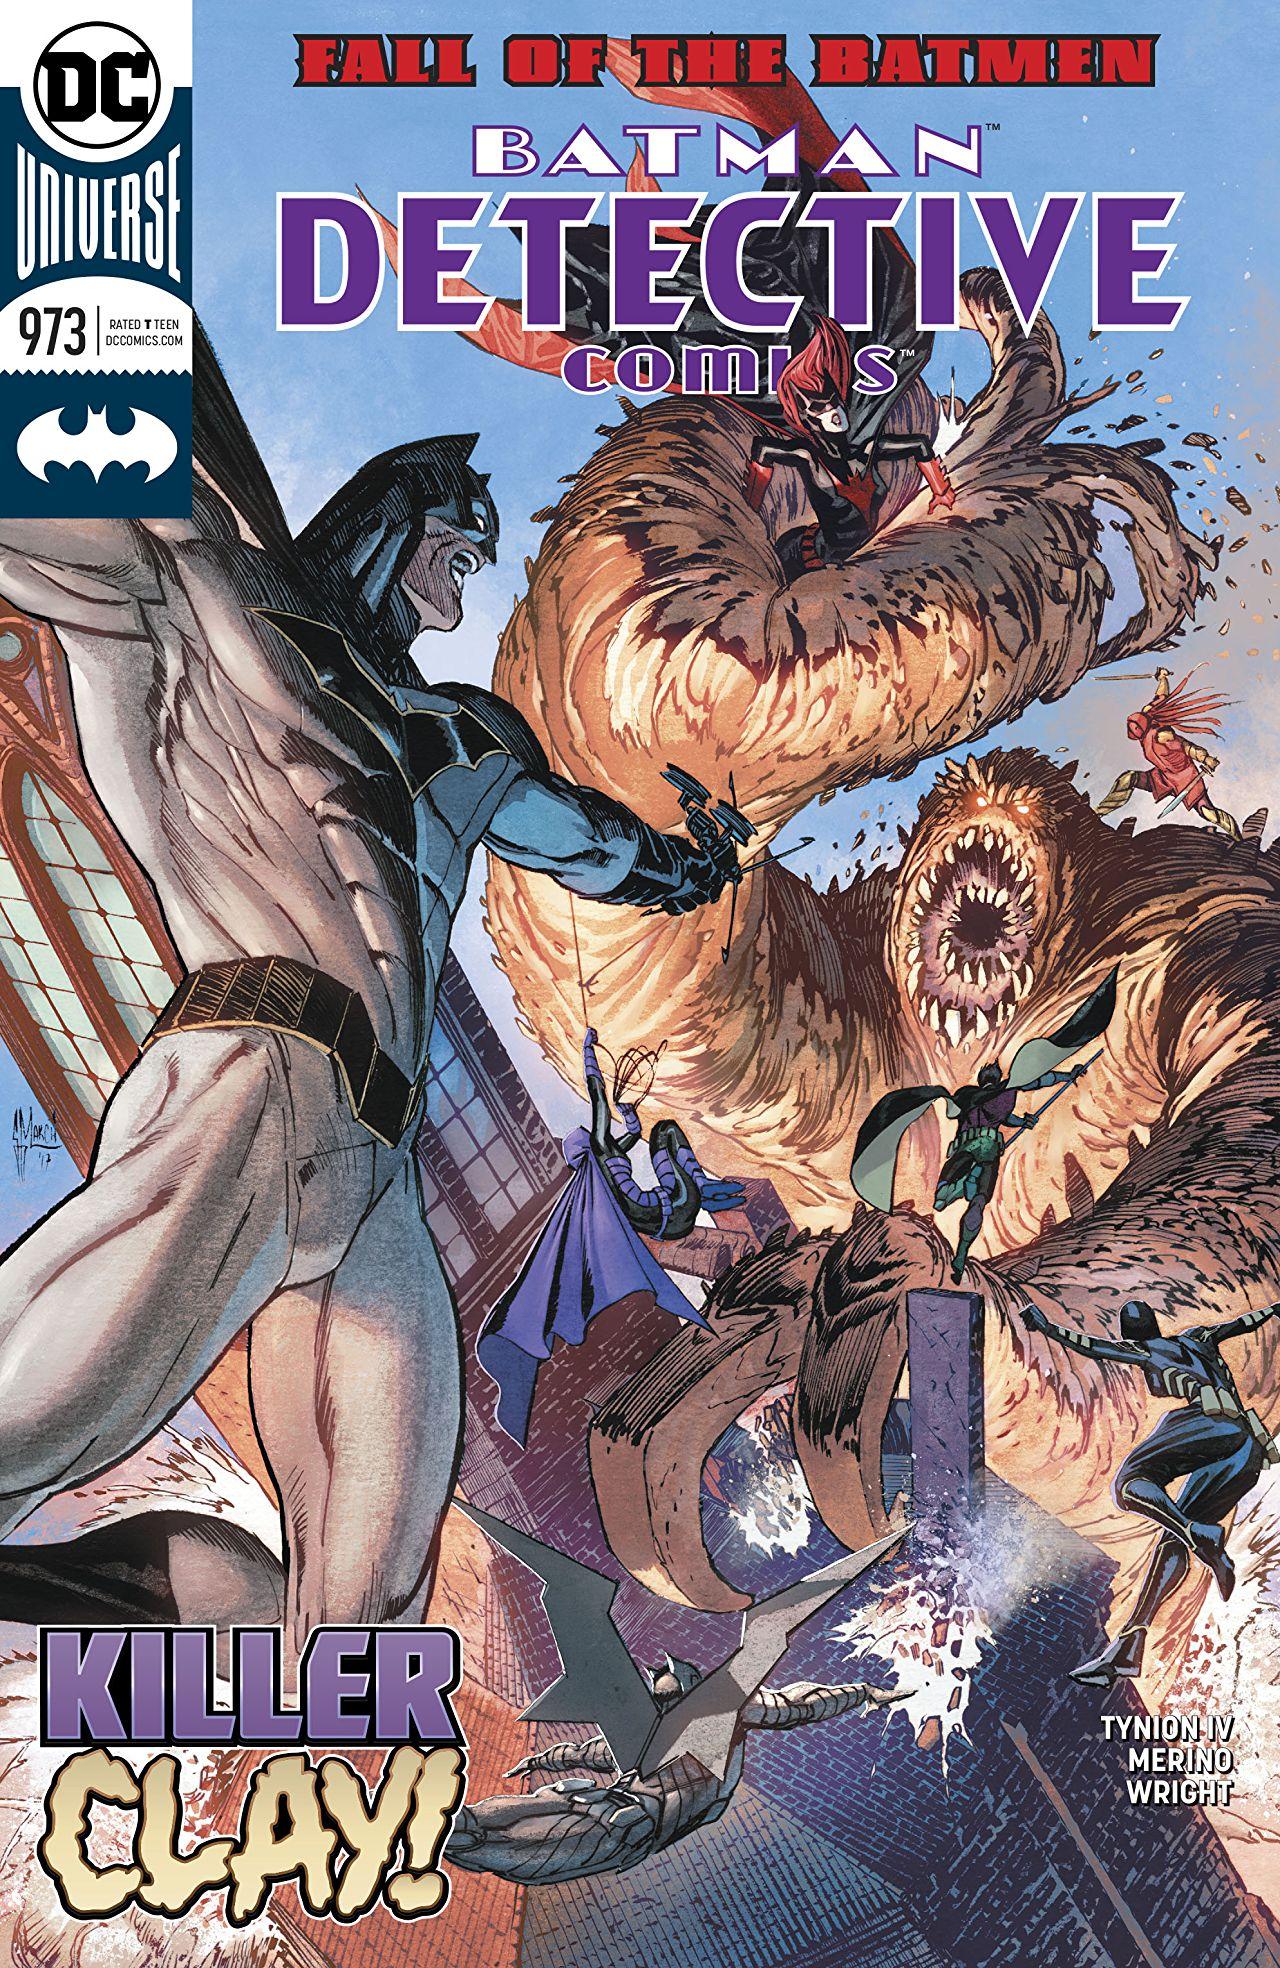 Detective Comics Vol. 1 #973